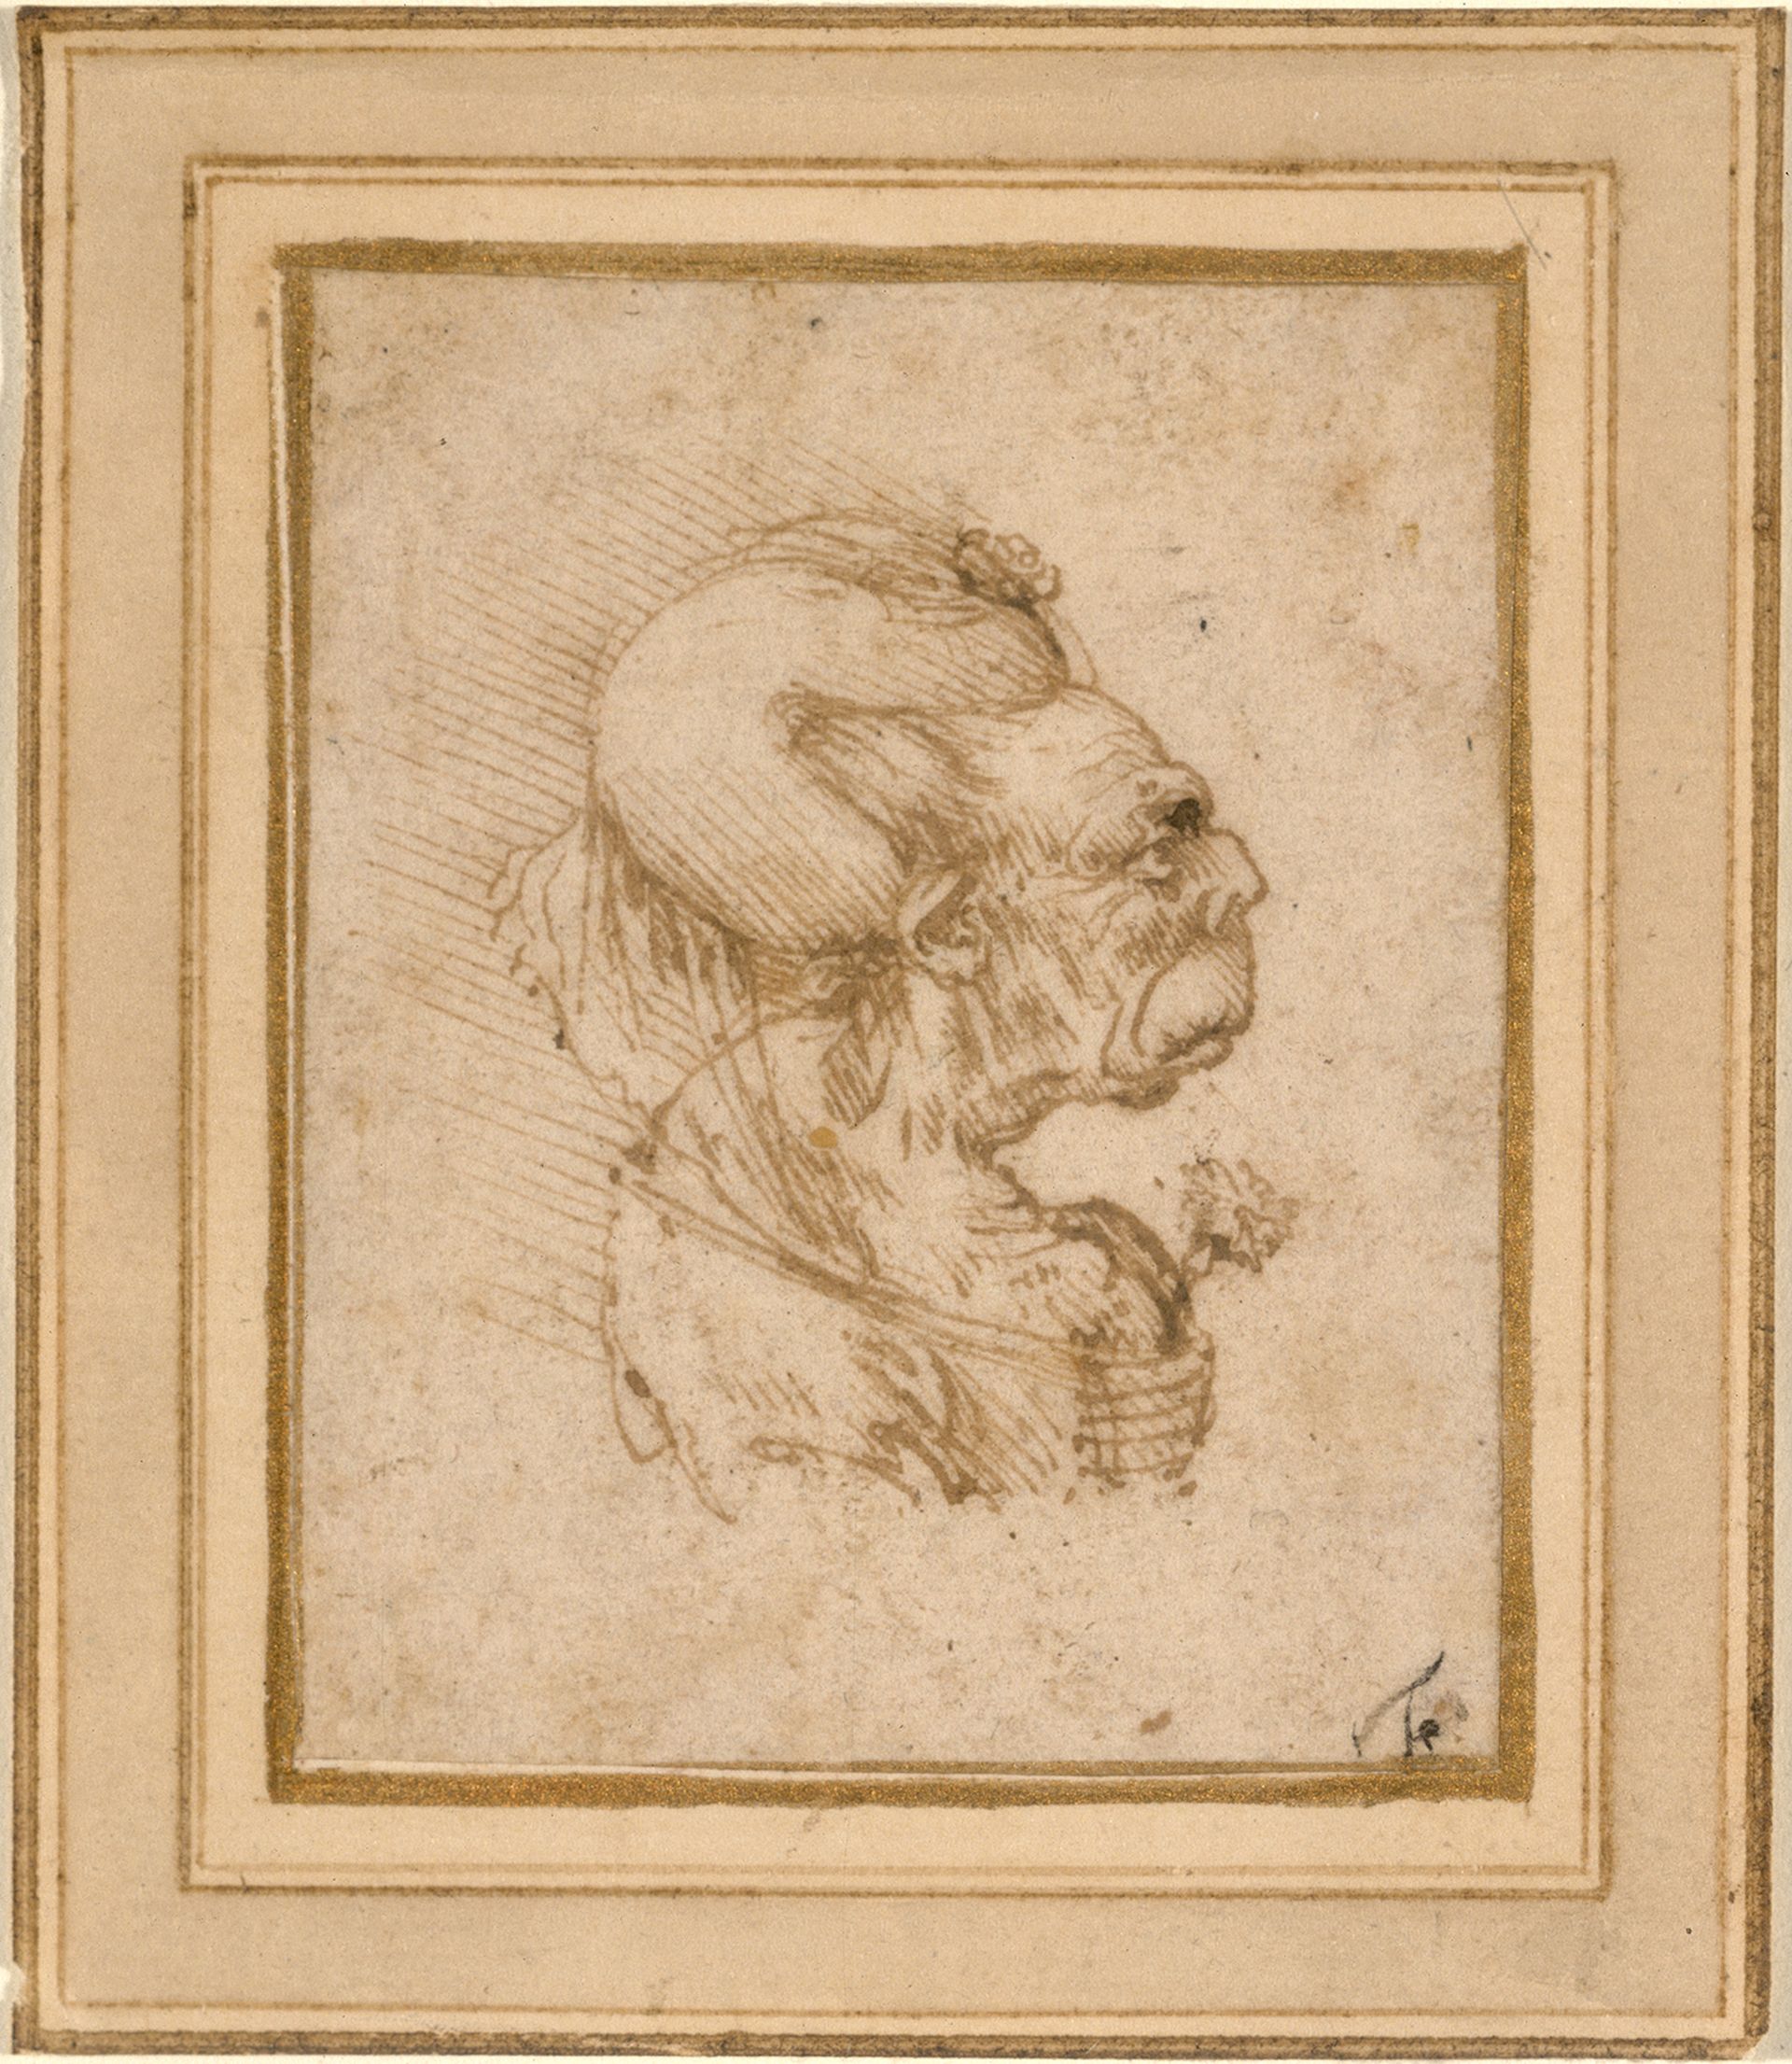 Leonardo da Vinci, Grotesque Head of an Old Woman, around 1489-90 Courtesy the National Gallery of Art, Washington, DC